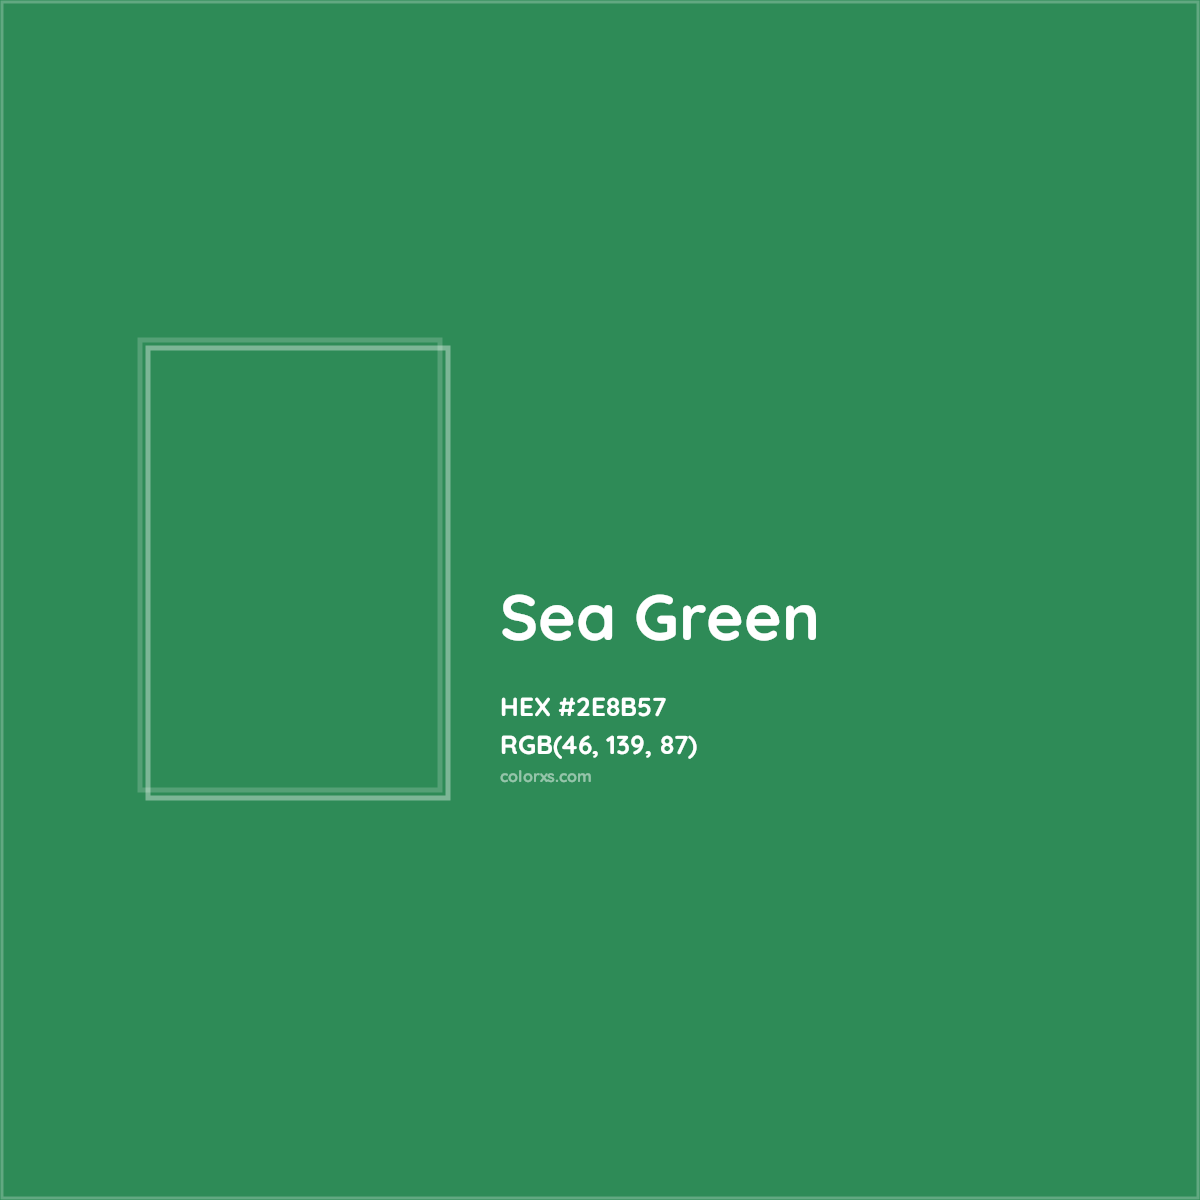 HEX #2E8B57 Sea Green Color - Color Code